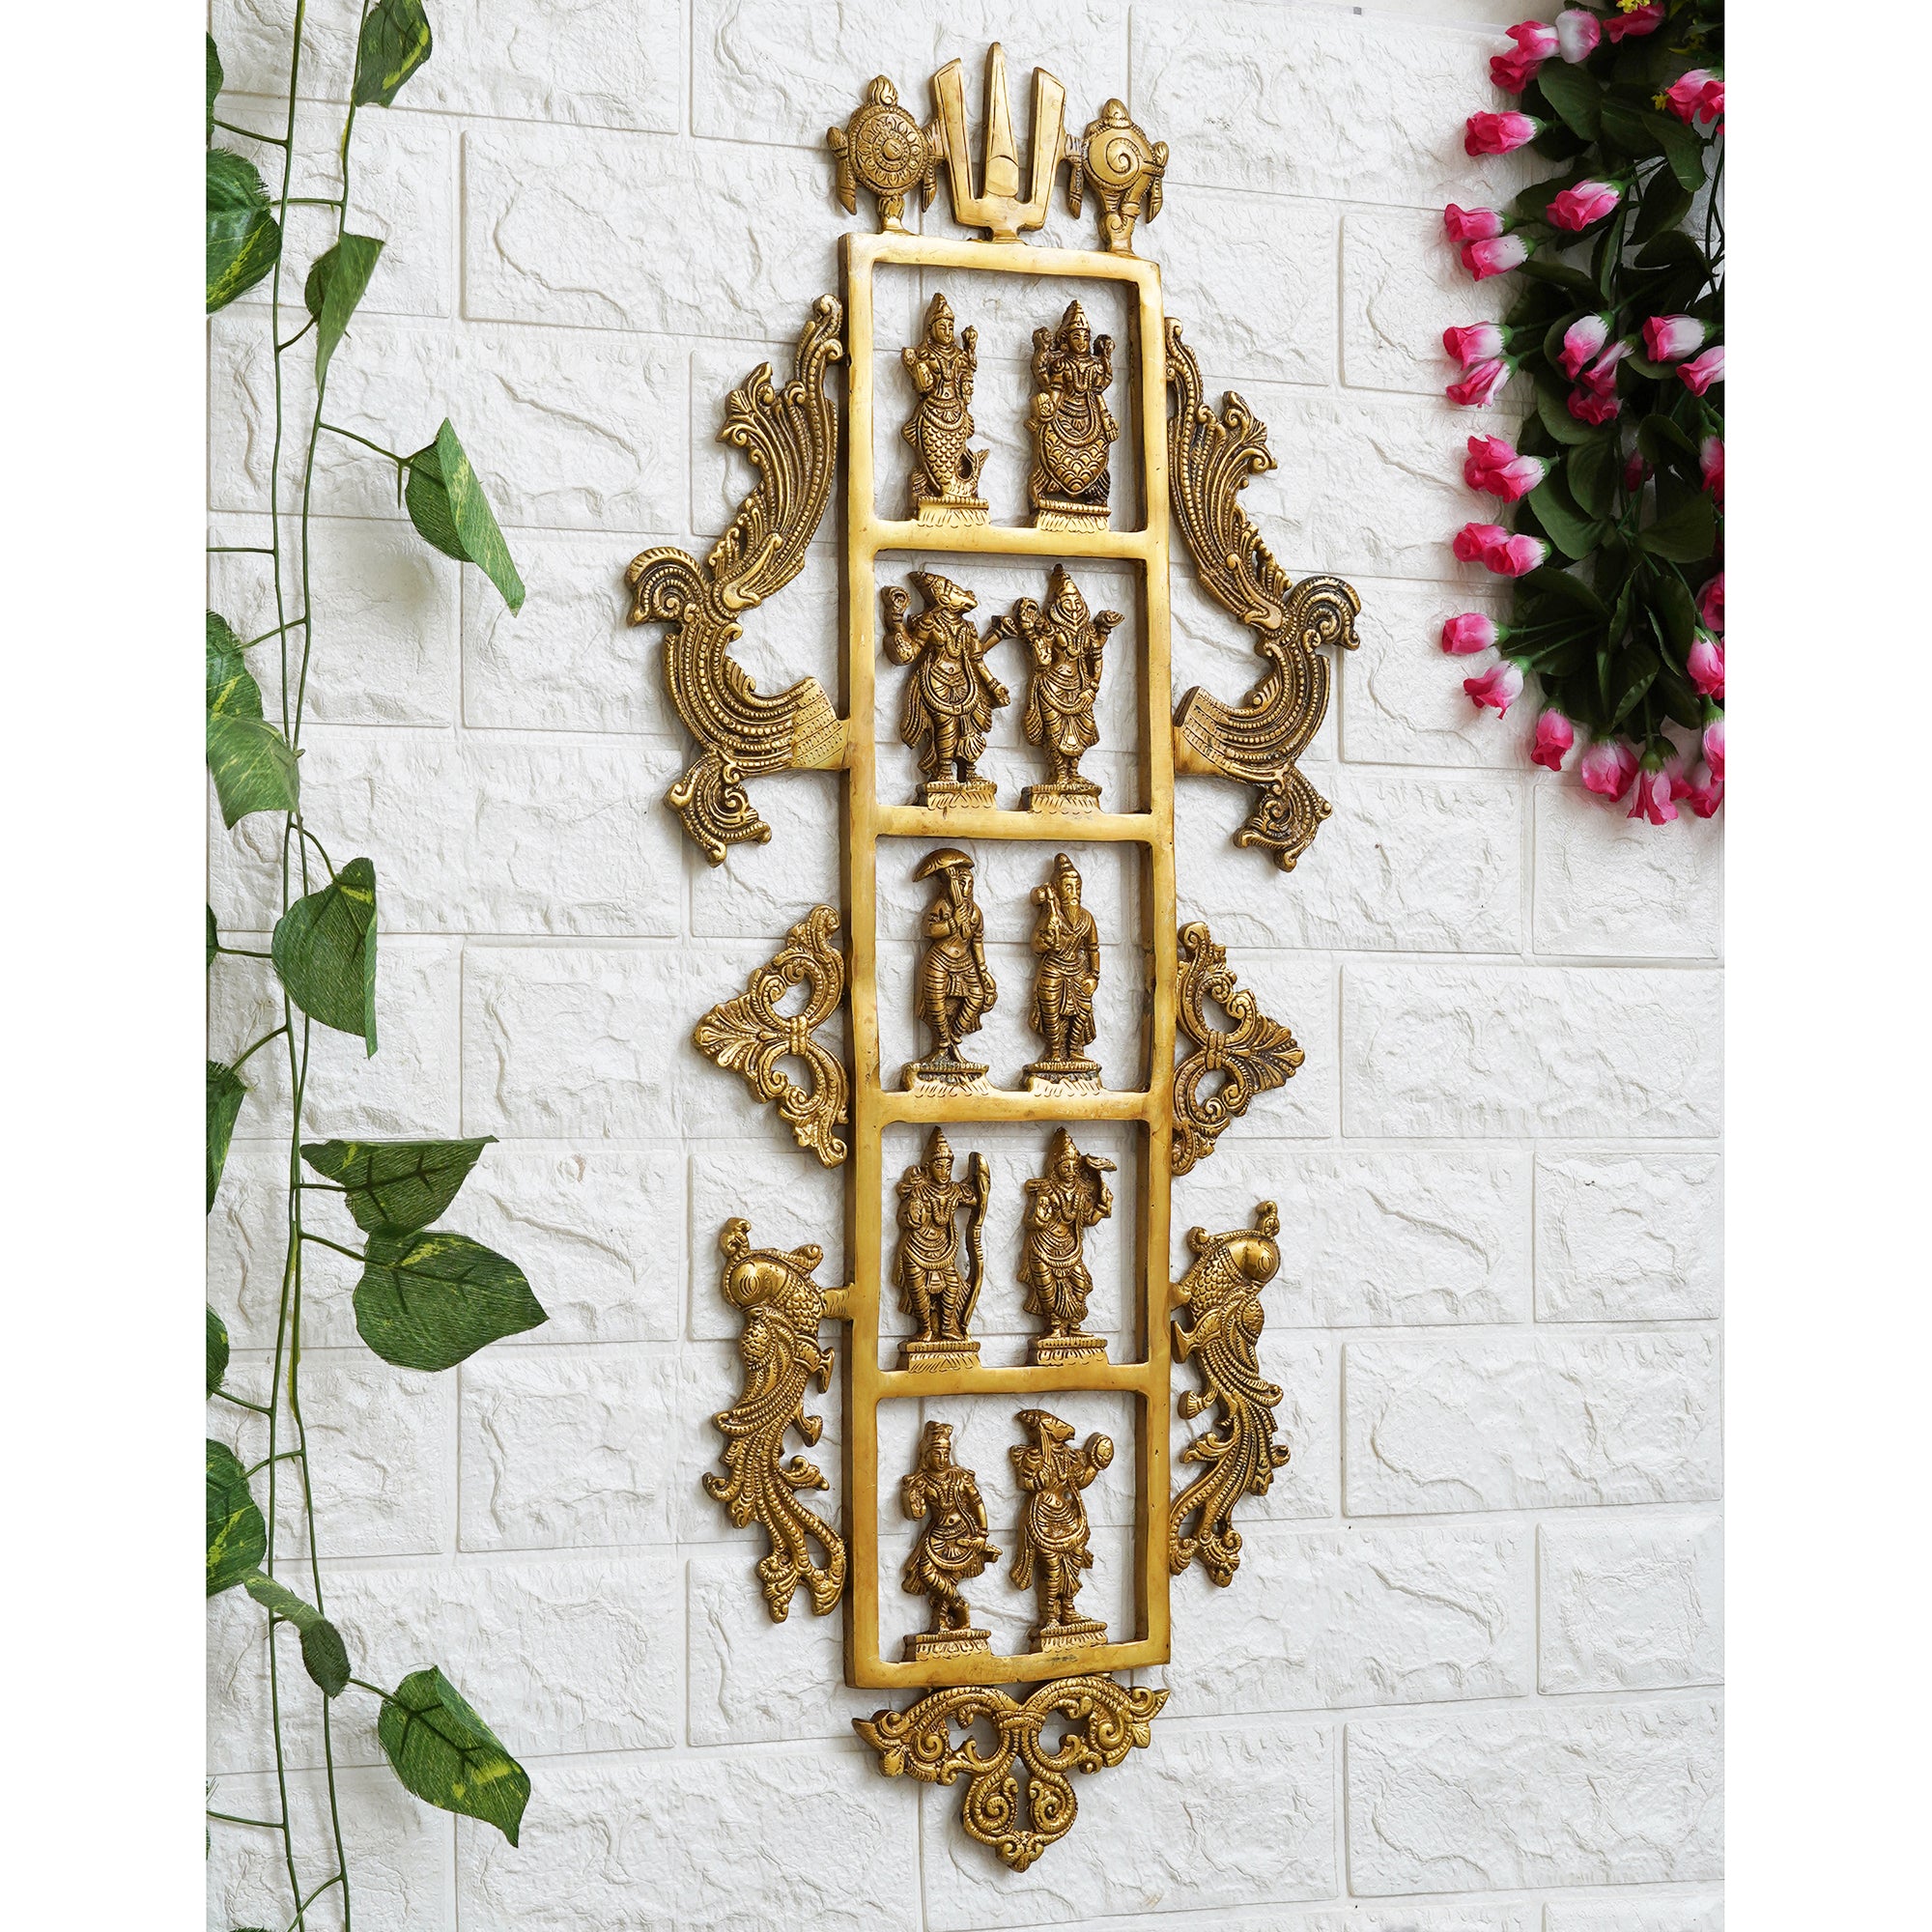 eCraftIndia Golden Brass Lord Vishnu Dashavatara - Ten Incarnations of Vishnu Religious Wall Hanging 1